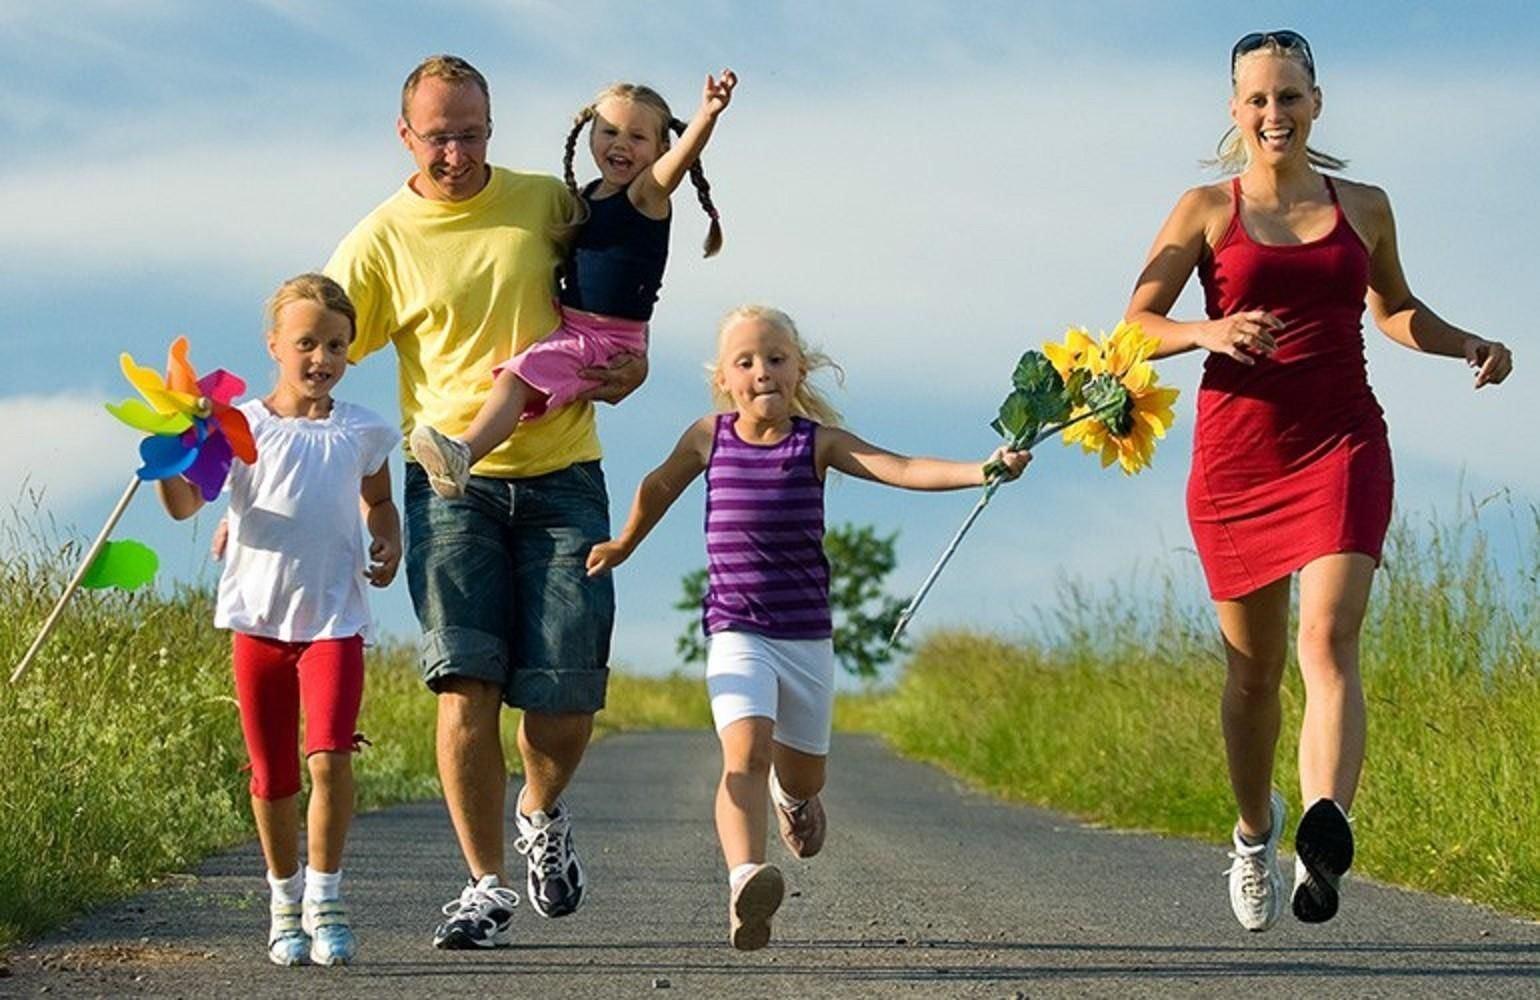 Организма в любом возрасте. Здоровый образ жизни. Спортивная семья. Активный и здоровый образ жизни. Спортивная семья с детьми.